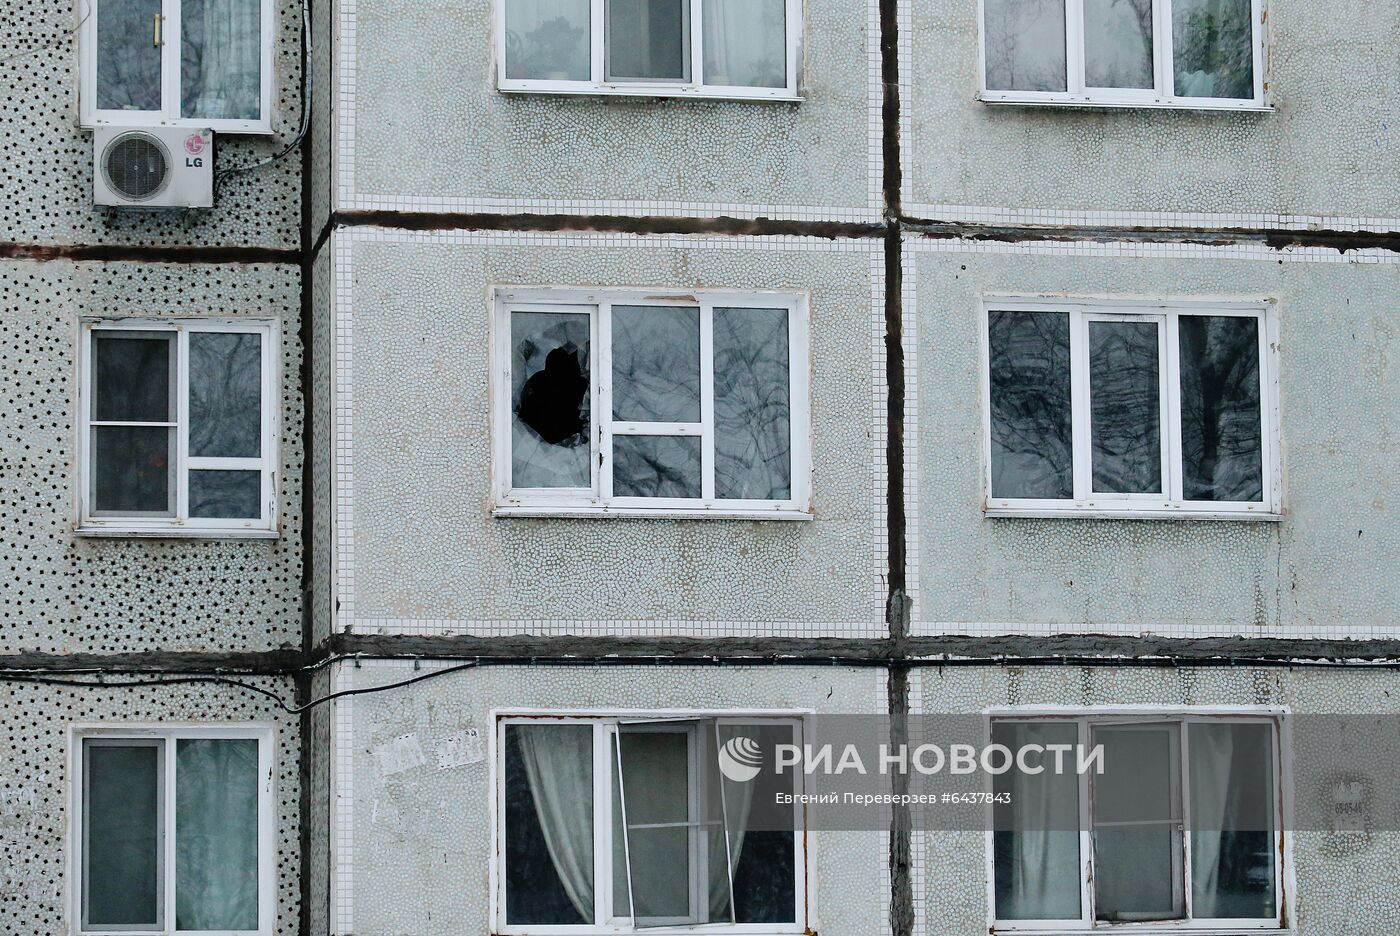 Пять человек погибли при пожаре в жилом доме в Хабаровске